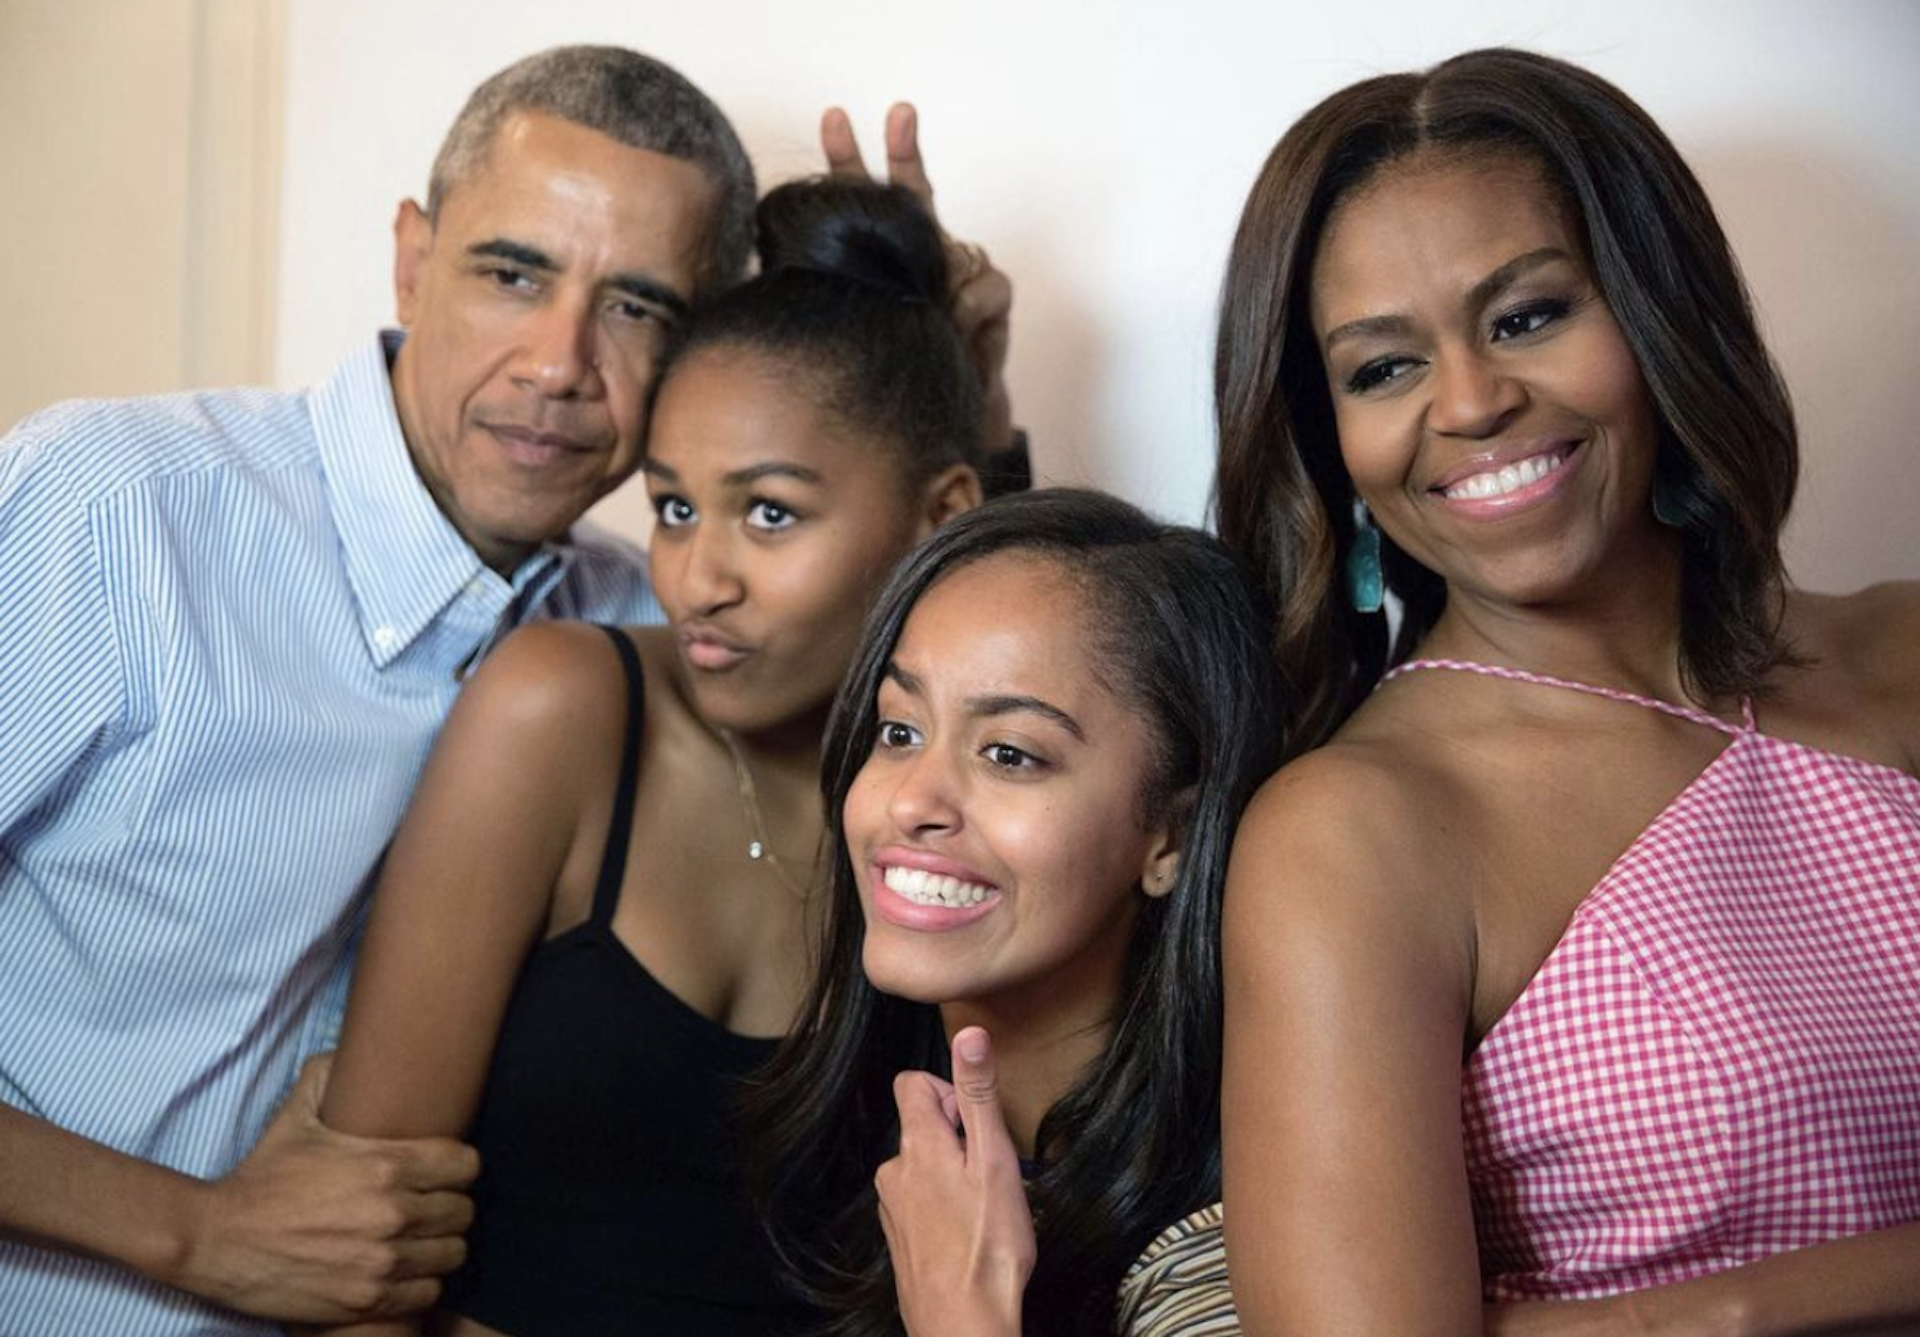 Fiicele lui Barack Obama, îmbrăcate provocator în club. Fetele au șocat publicul – Foto